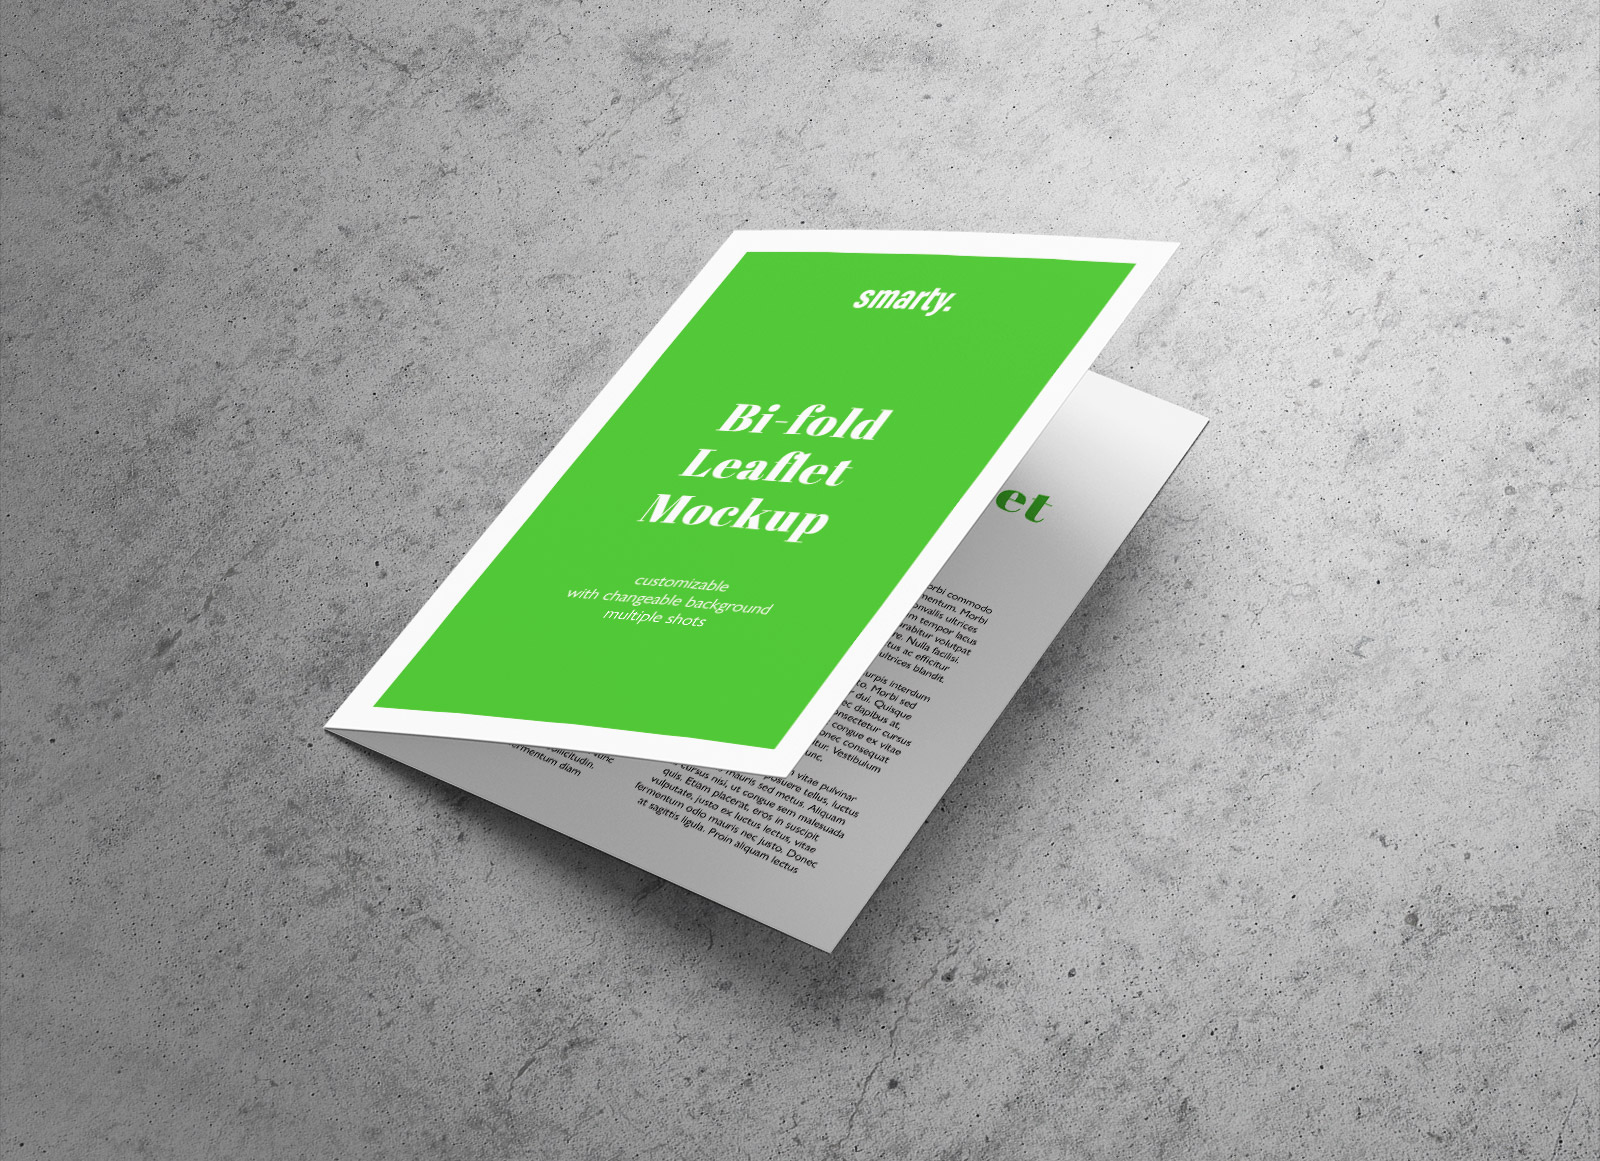 Download Free A5 Bi-Fold Brochure / Leaflet Mockup PSD - Good Mockups